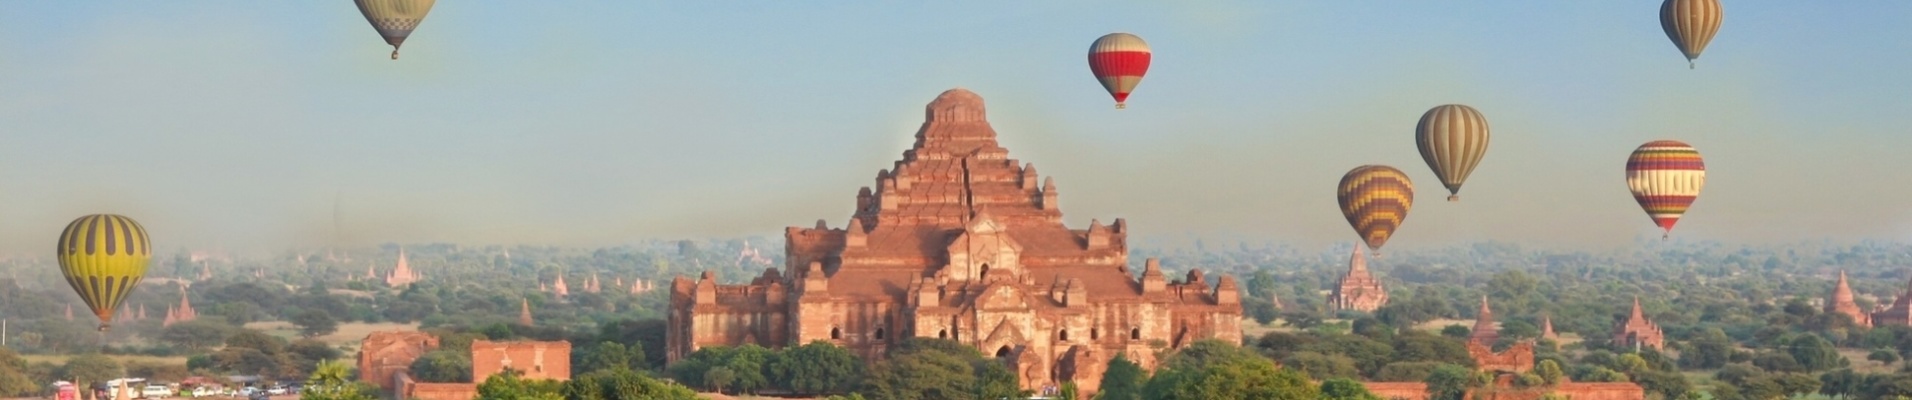 Montgolfière dans le ciel de Bagan